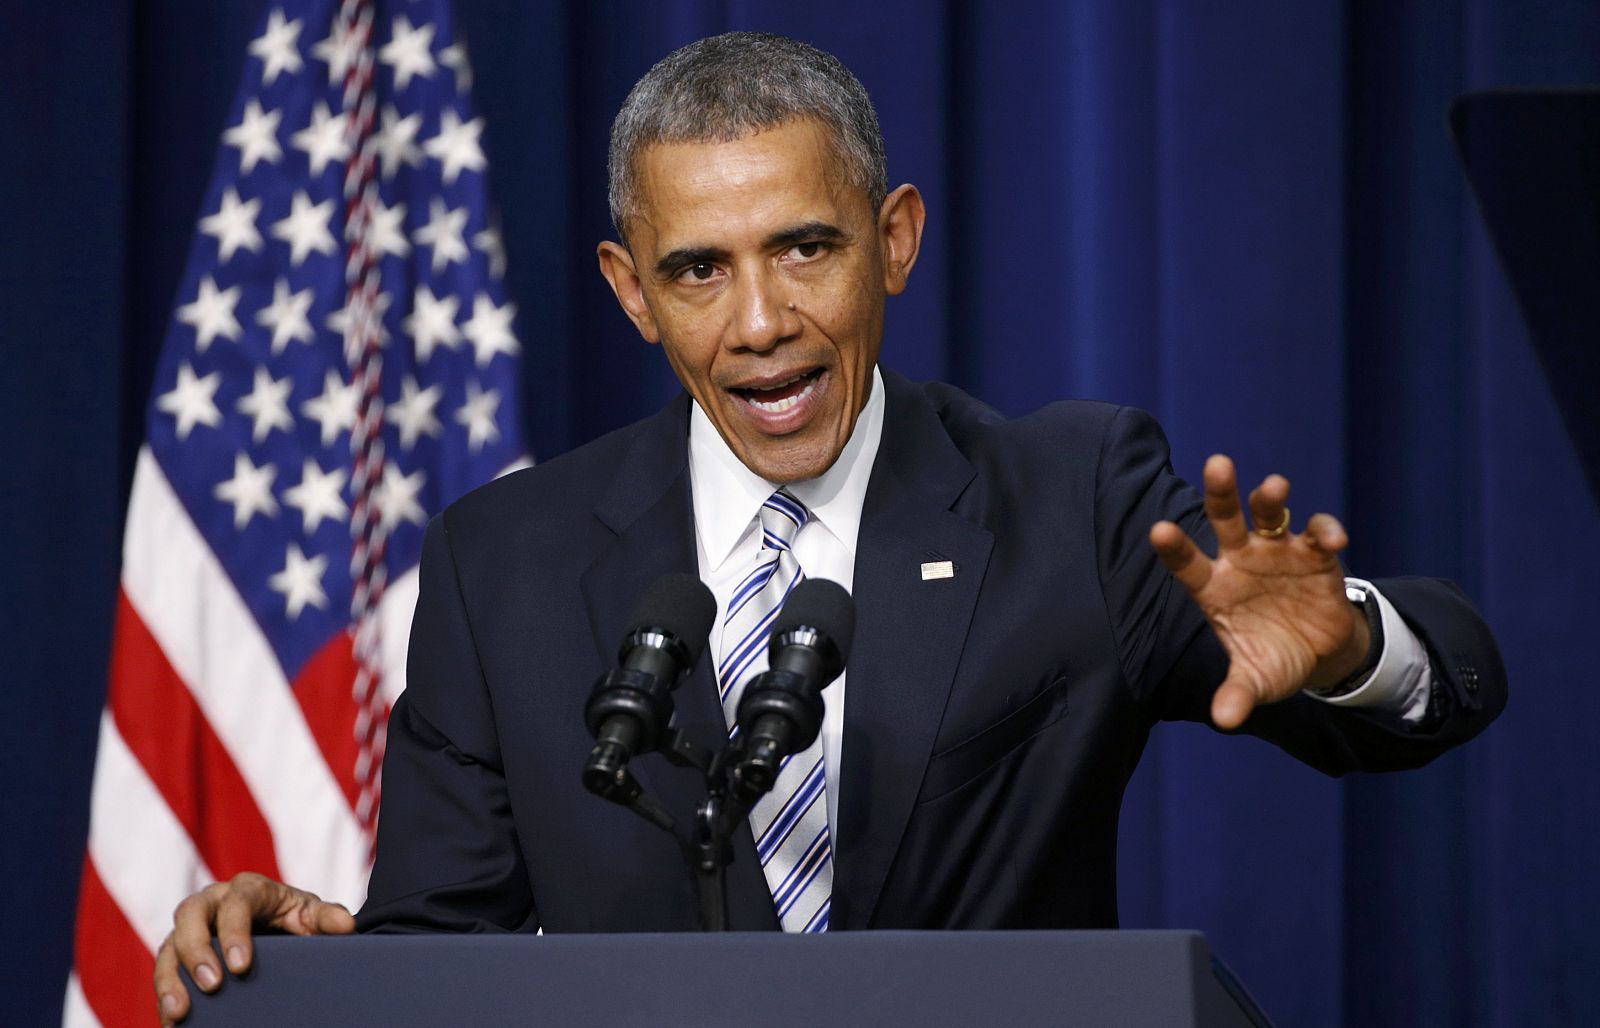 Un momento del discurso del presidente de Estados Unidos, Barack Obama, en la inauguración de la cumbre contra el terrorismo extremista celebrada en Washington.